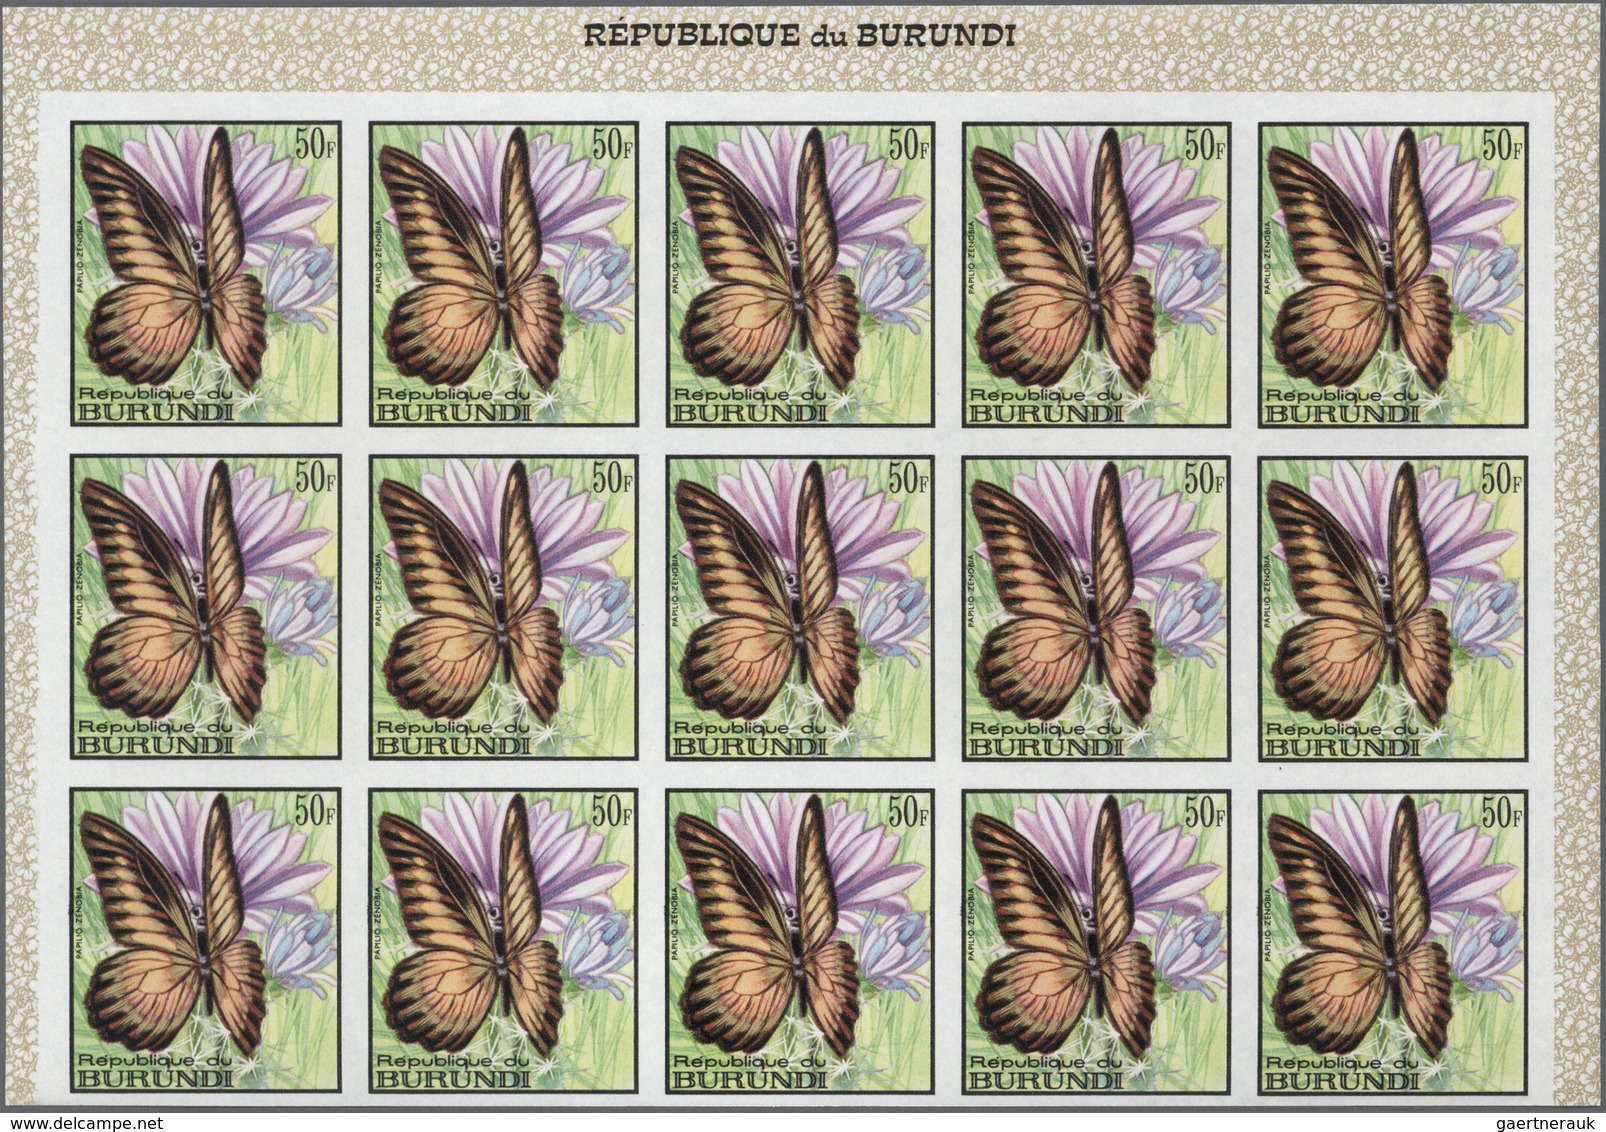 Thematik: Tiere-Schmetterlinge / animals-butterflies: 1968, BURUNDI: Butterflies complete set of 16